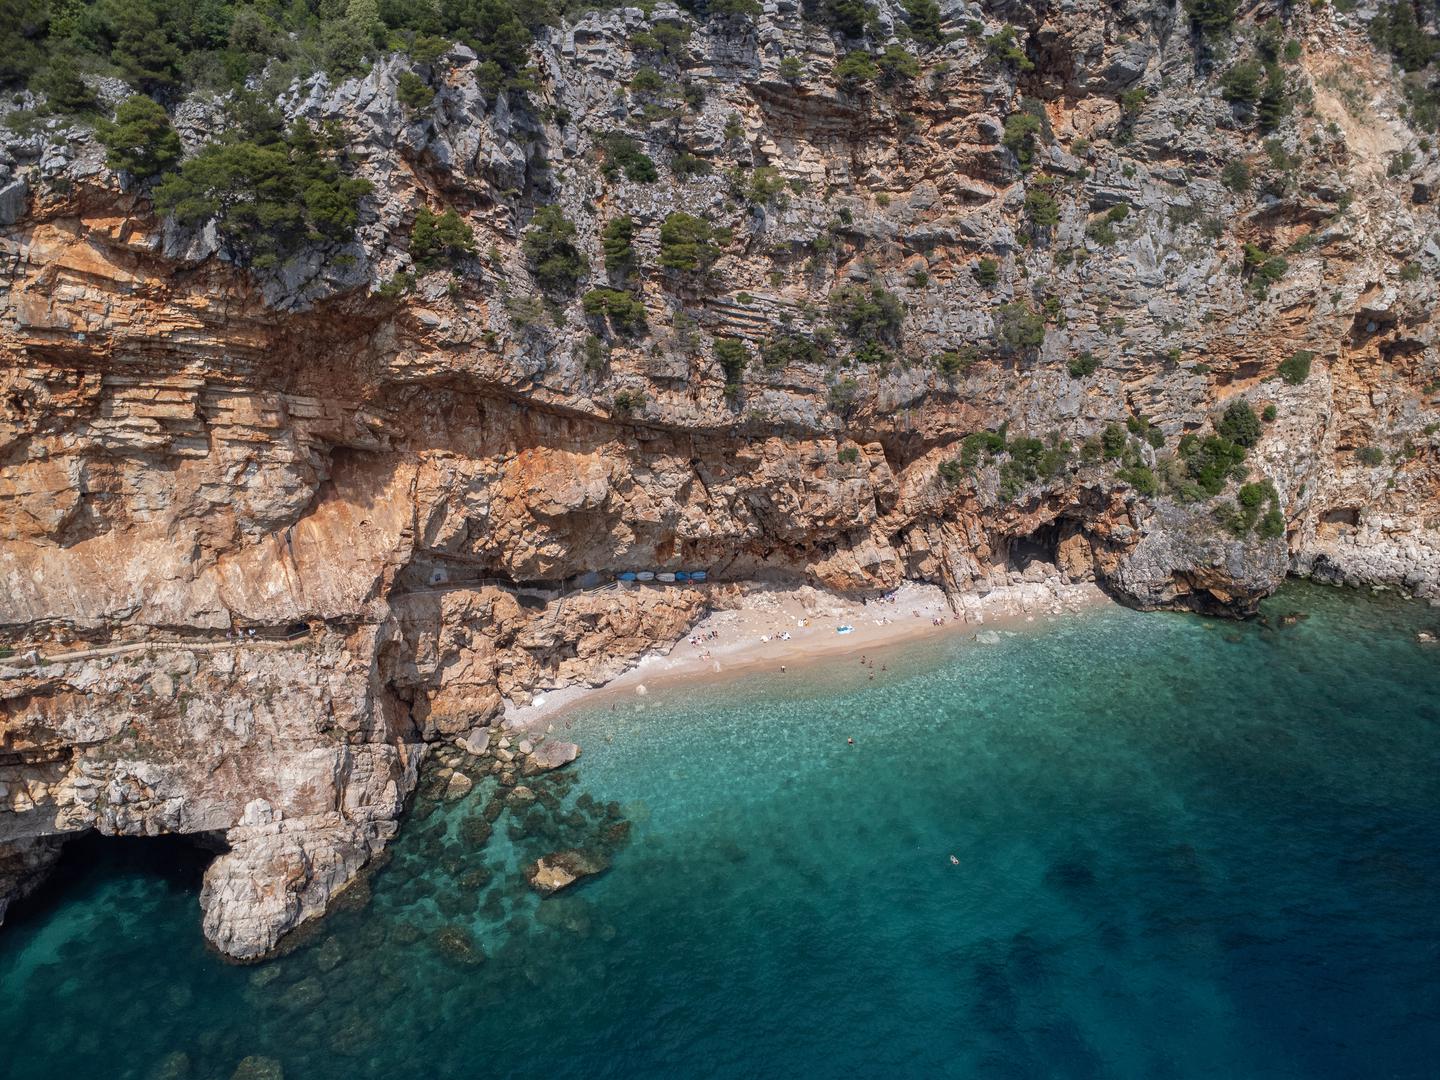 Pasjača, Konavle. Ova plaža nalazi se u južnoj Dalmaciji, a od Dubrovnika je udaljena 40 minuta. Da biste tamo stigli, prvo ćete stići u selo Popovići. Pasjača je prekrasna skrovita plaža smještena u podnožju stijena. Do plaže se spušta dugim i vrlo strmim stepenicama.